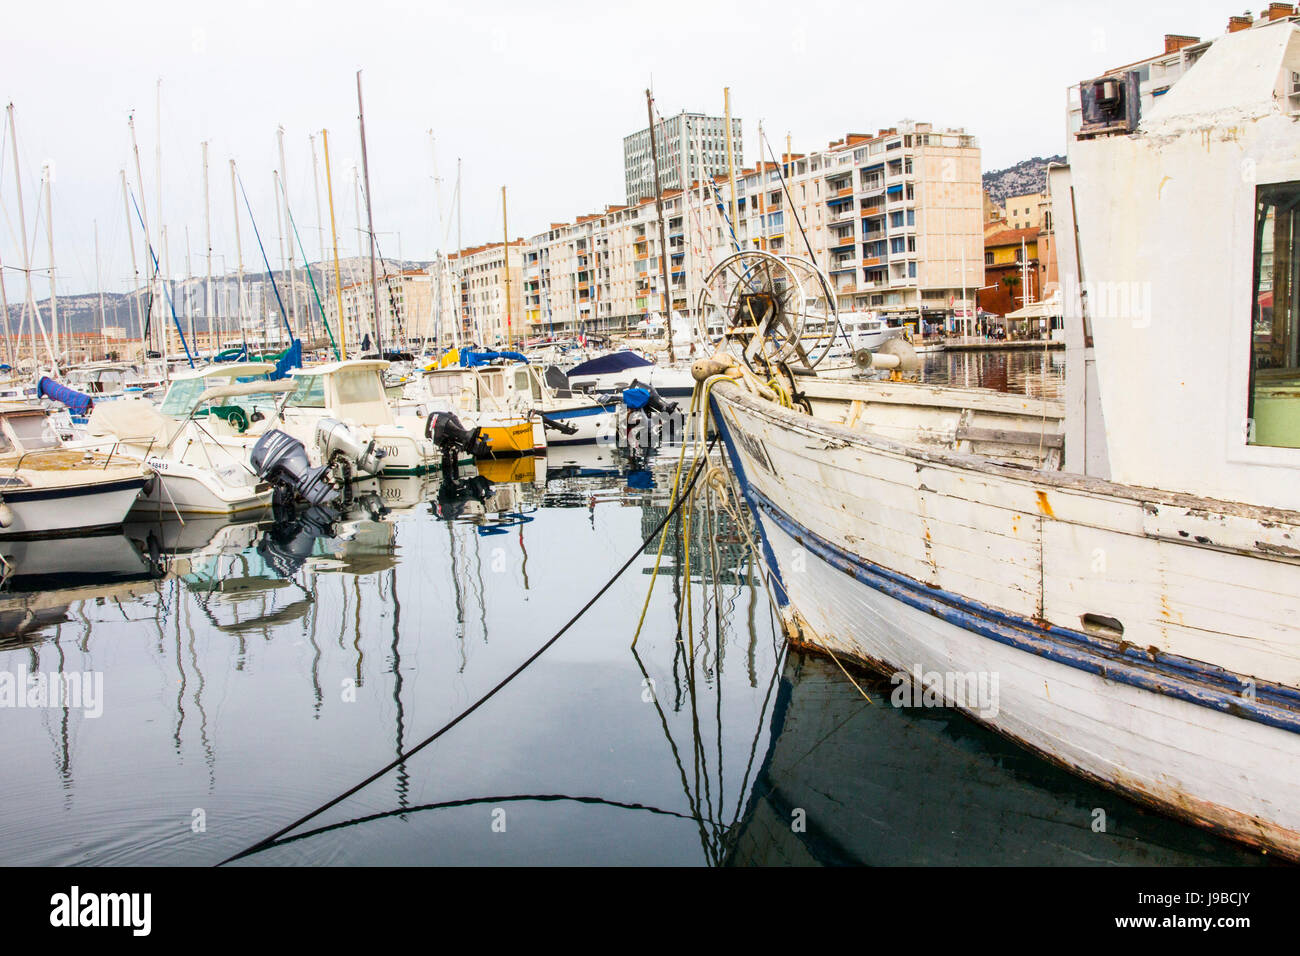 Bateaux de pêche et de plaisance privé partager la marina dans le port de la ville de Toulon, France. Banque D'Images